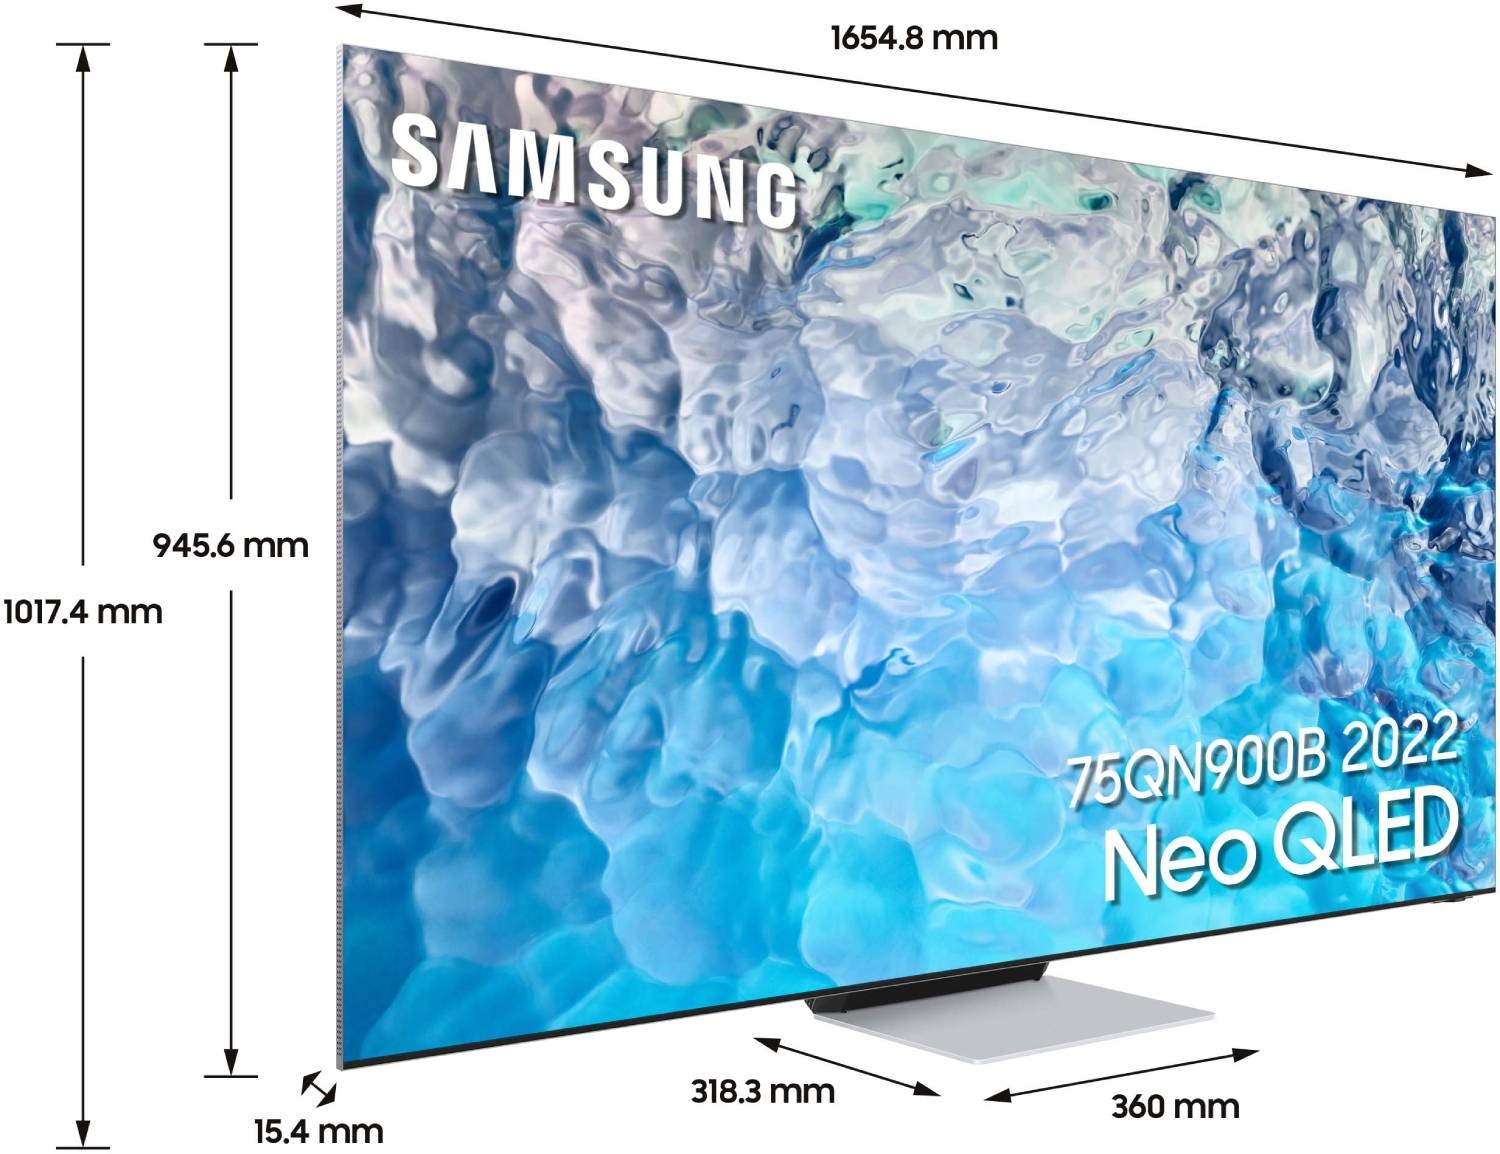 SAMSUNG TV Neo QLED 8K 189 cm TV Neo QLED QE75QN900B 8K 189 cm